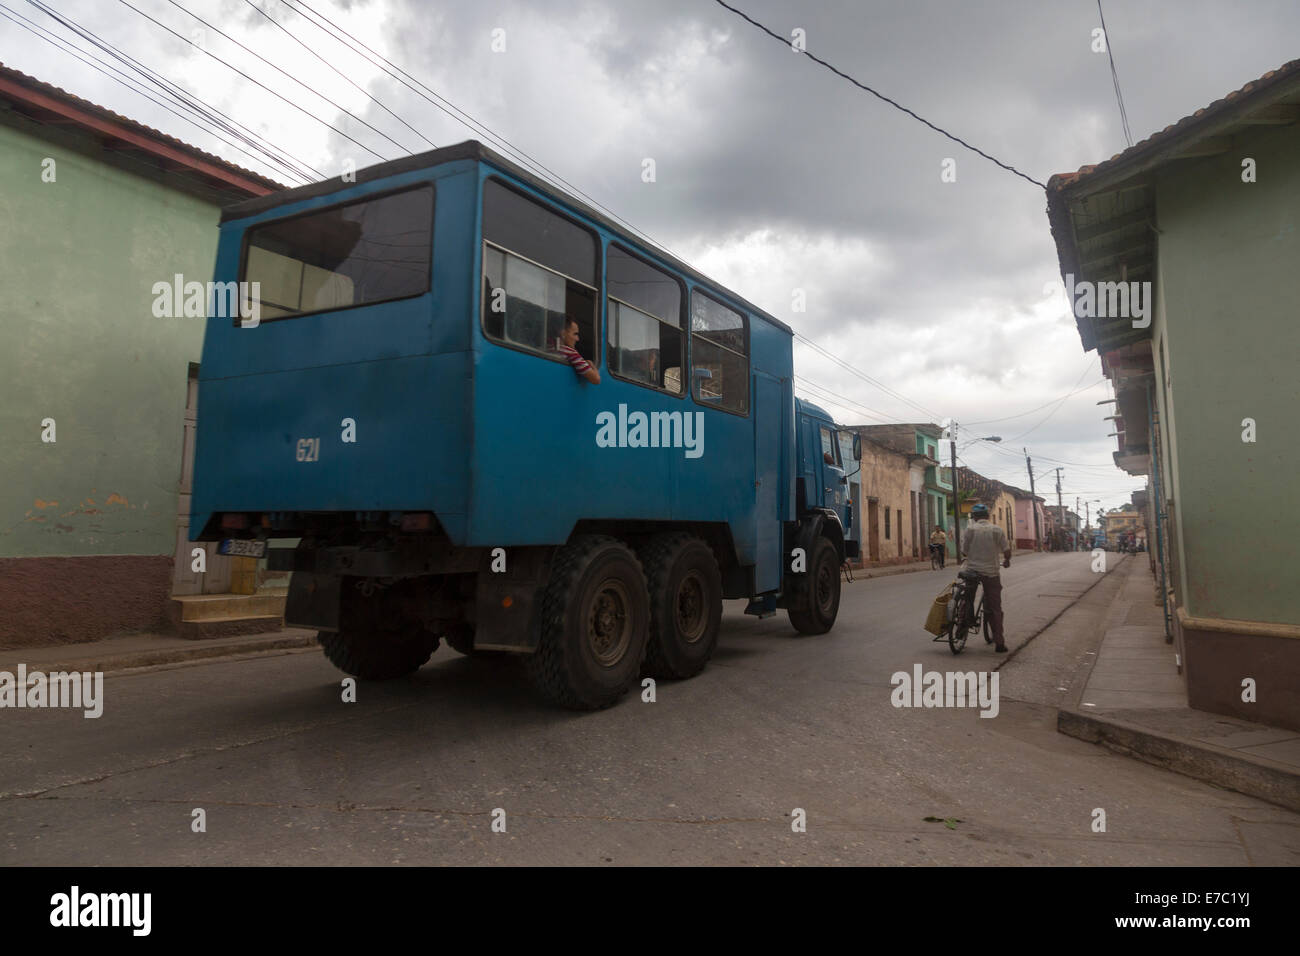 Camión del ejército convertido para transporte público, Trinidad, Cuba Foto de stock